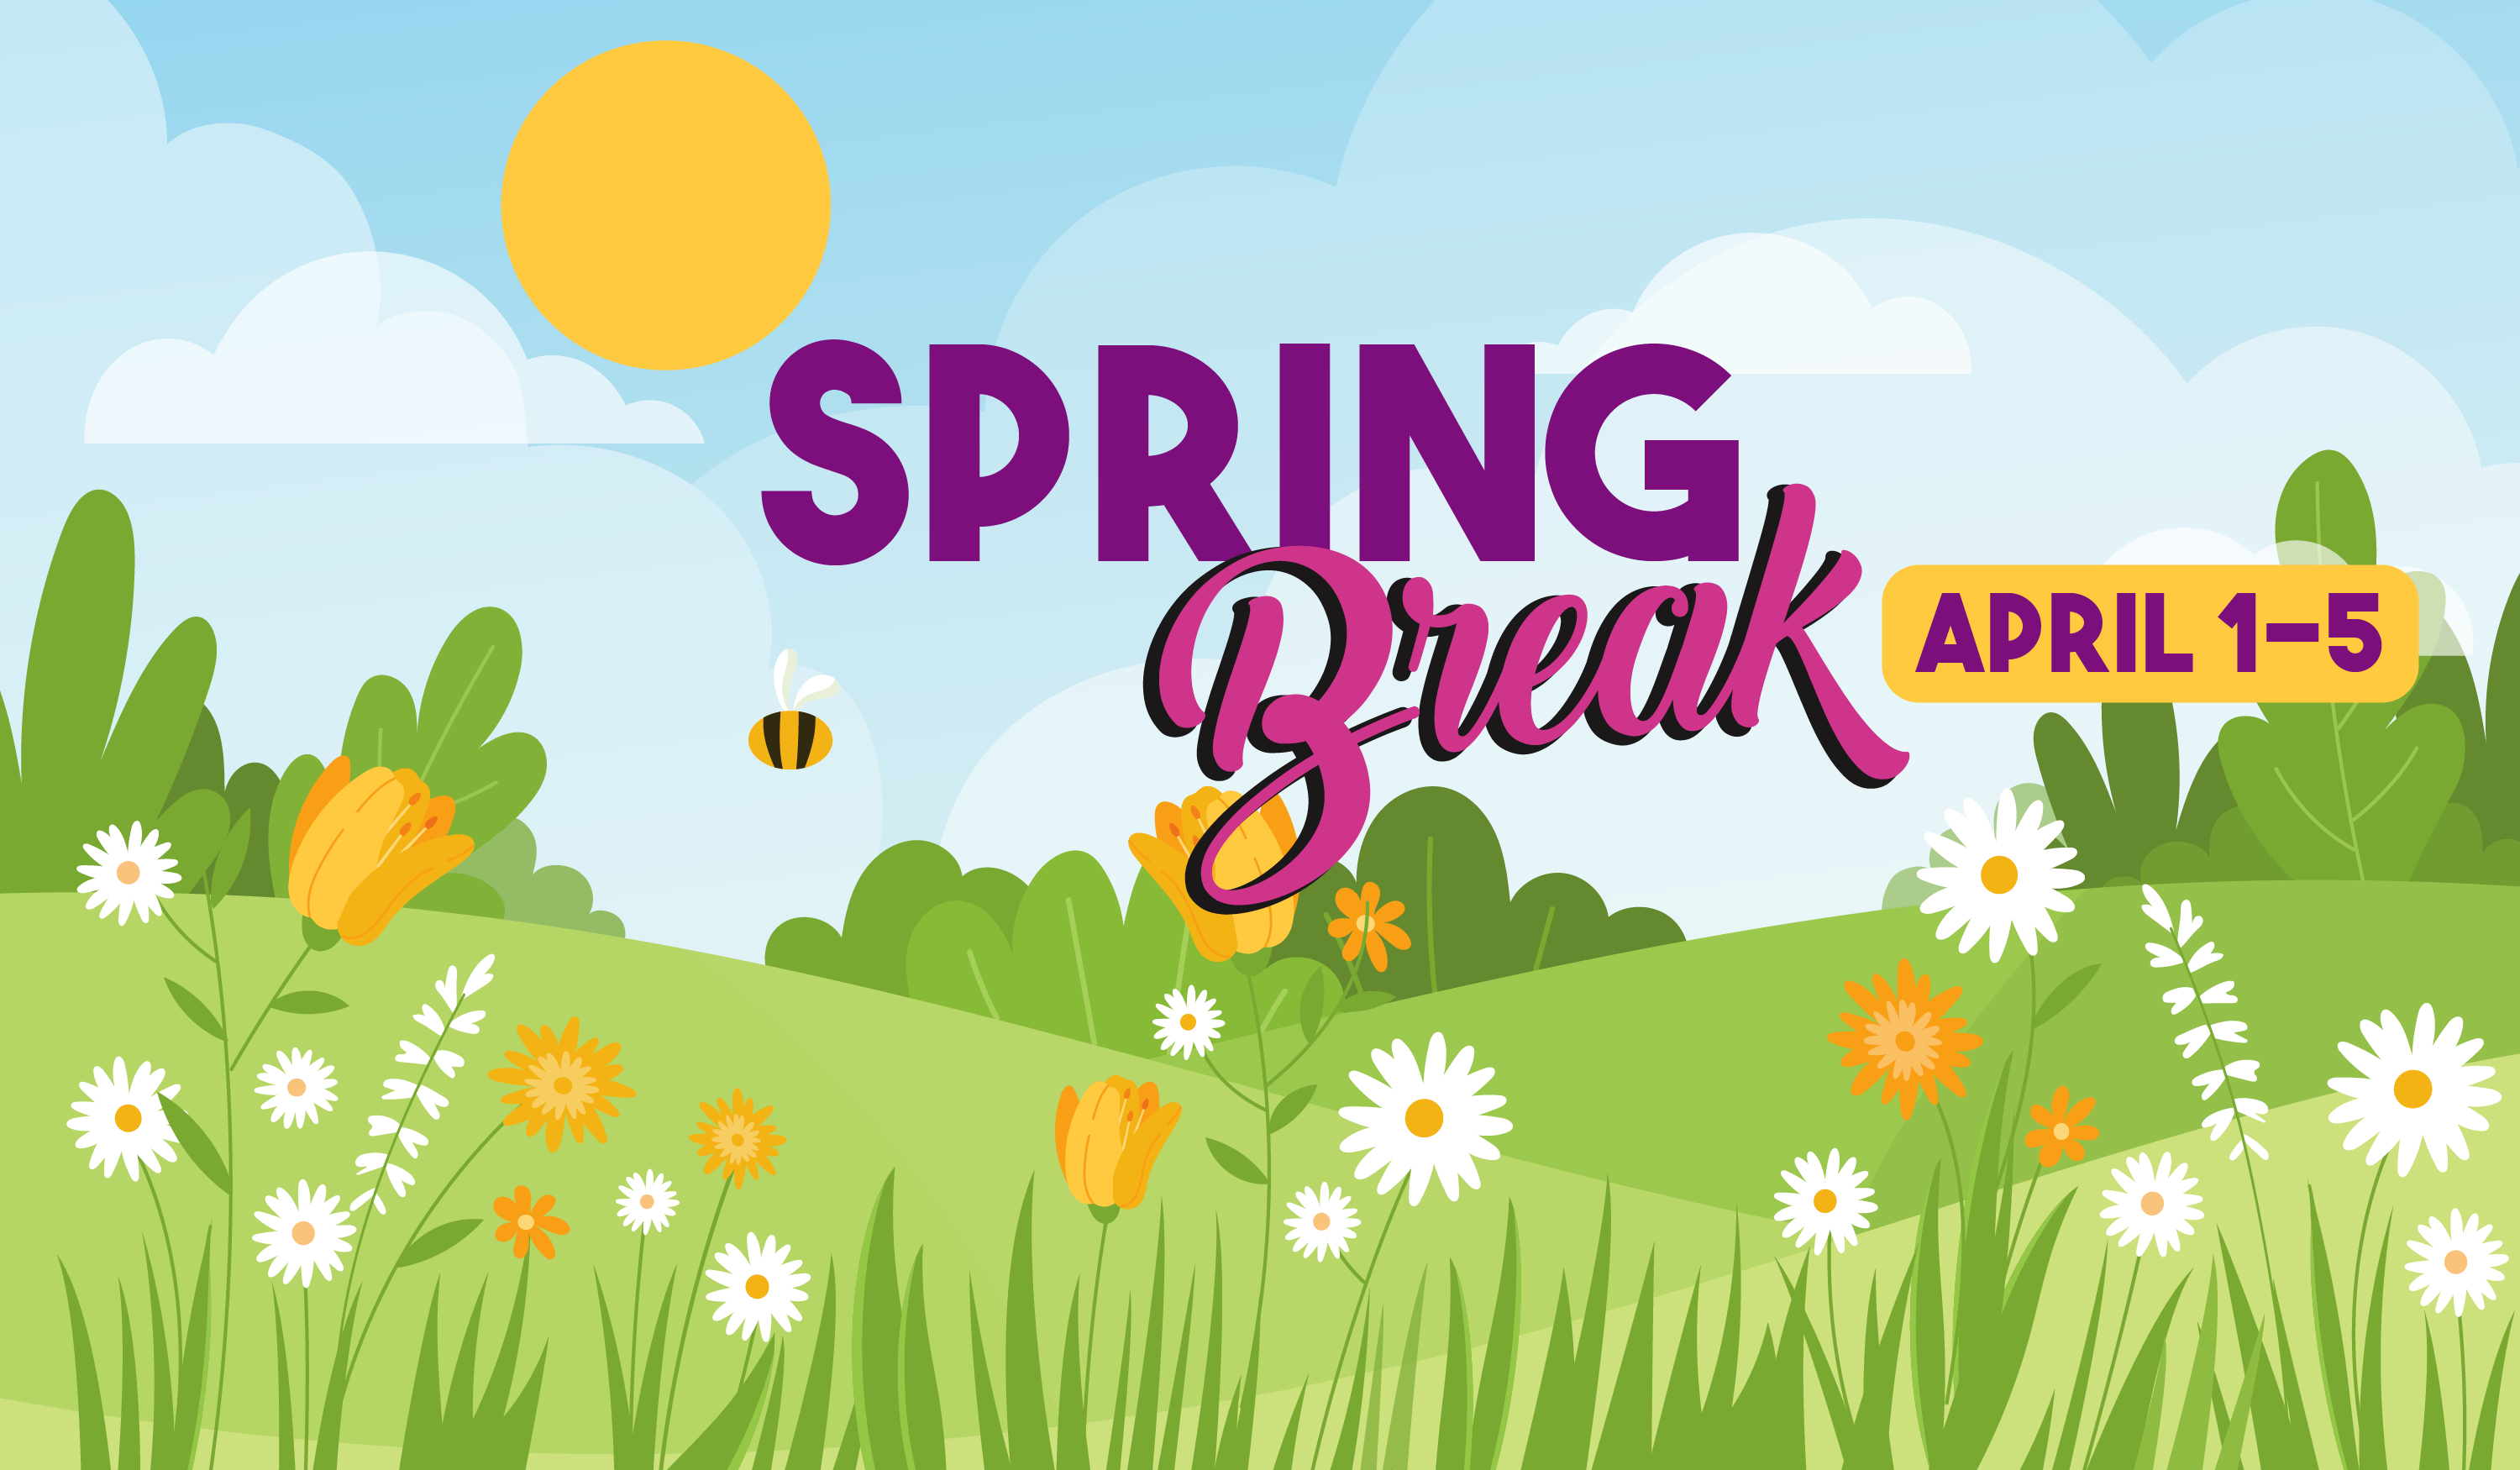 spring break april 1-5